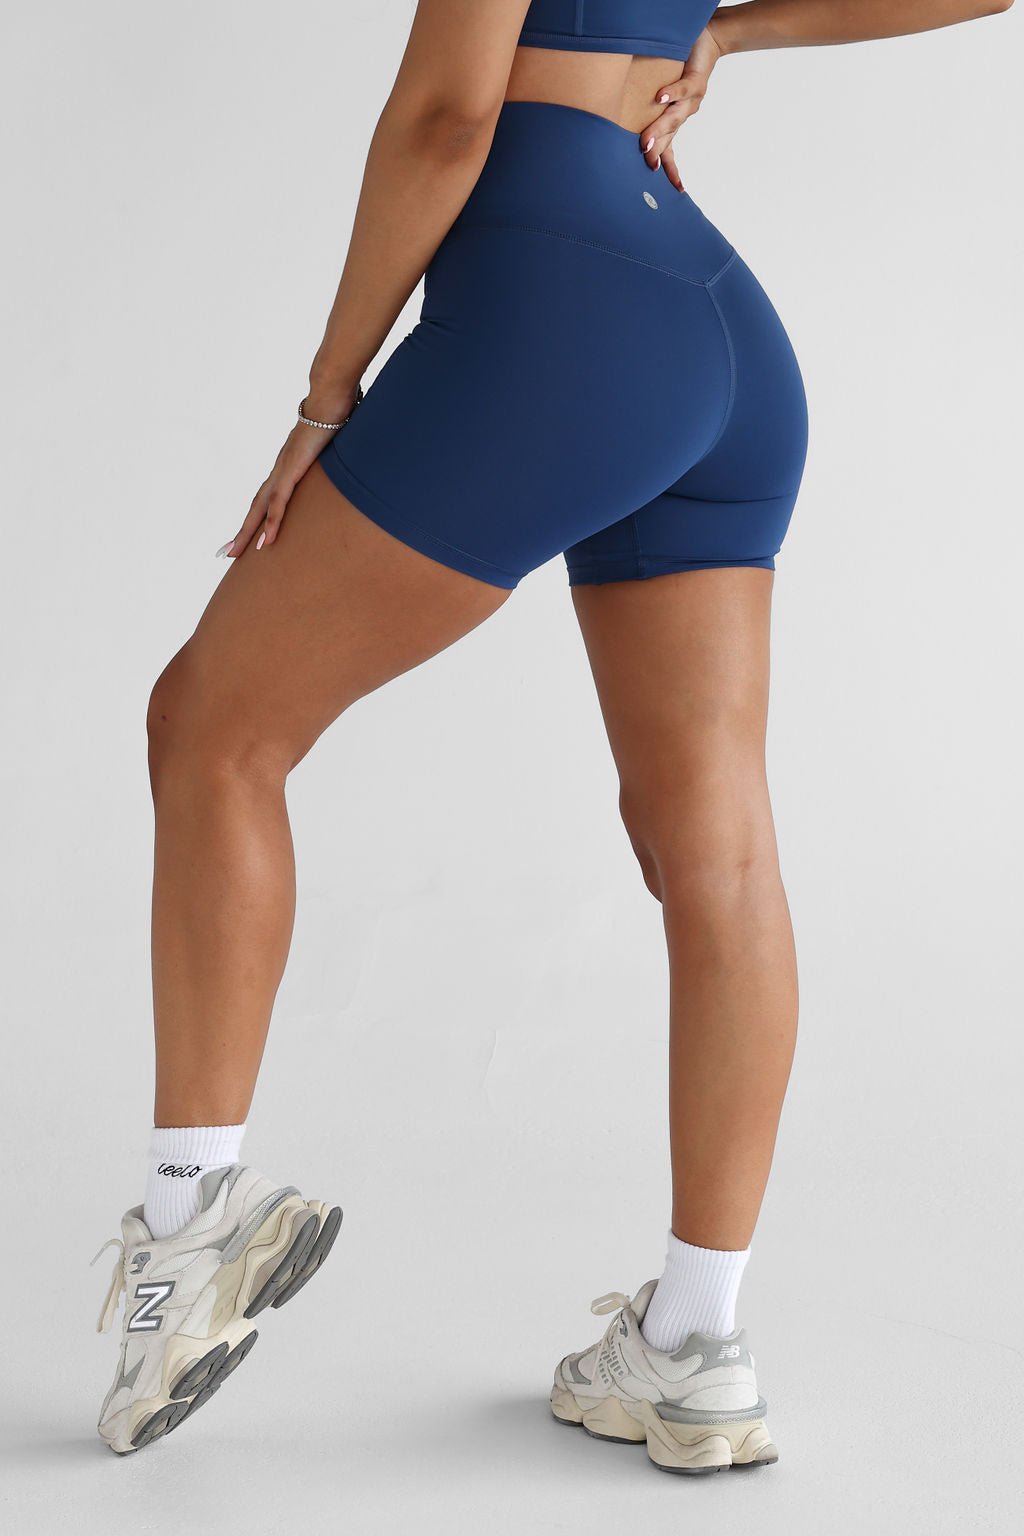 6" Bike Shorts - Royal Blue - LEELO ACTIVE